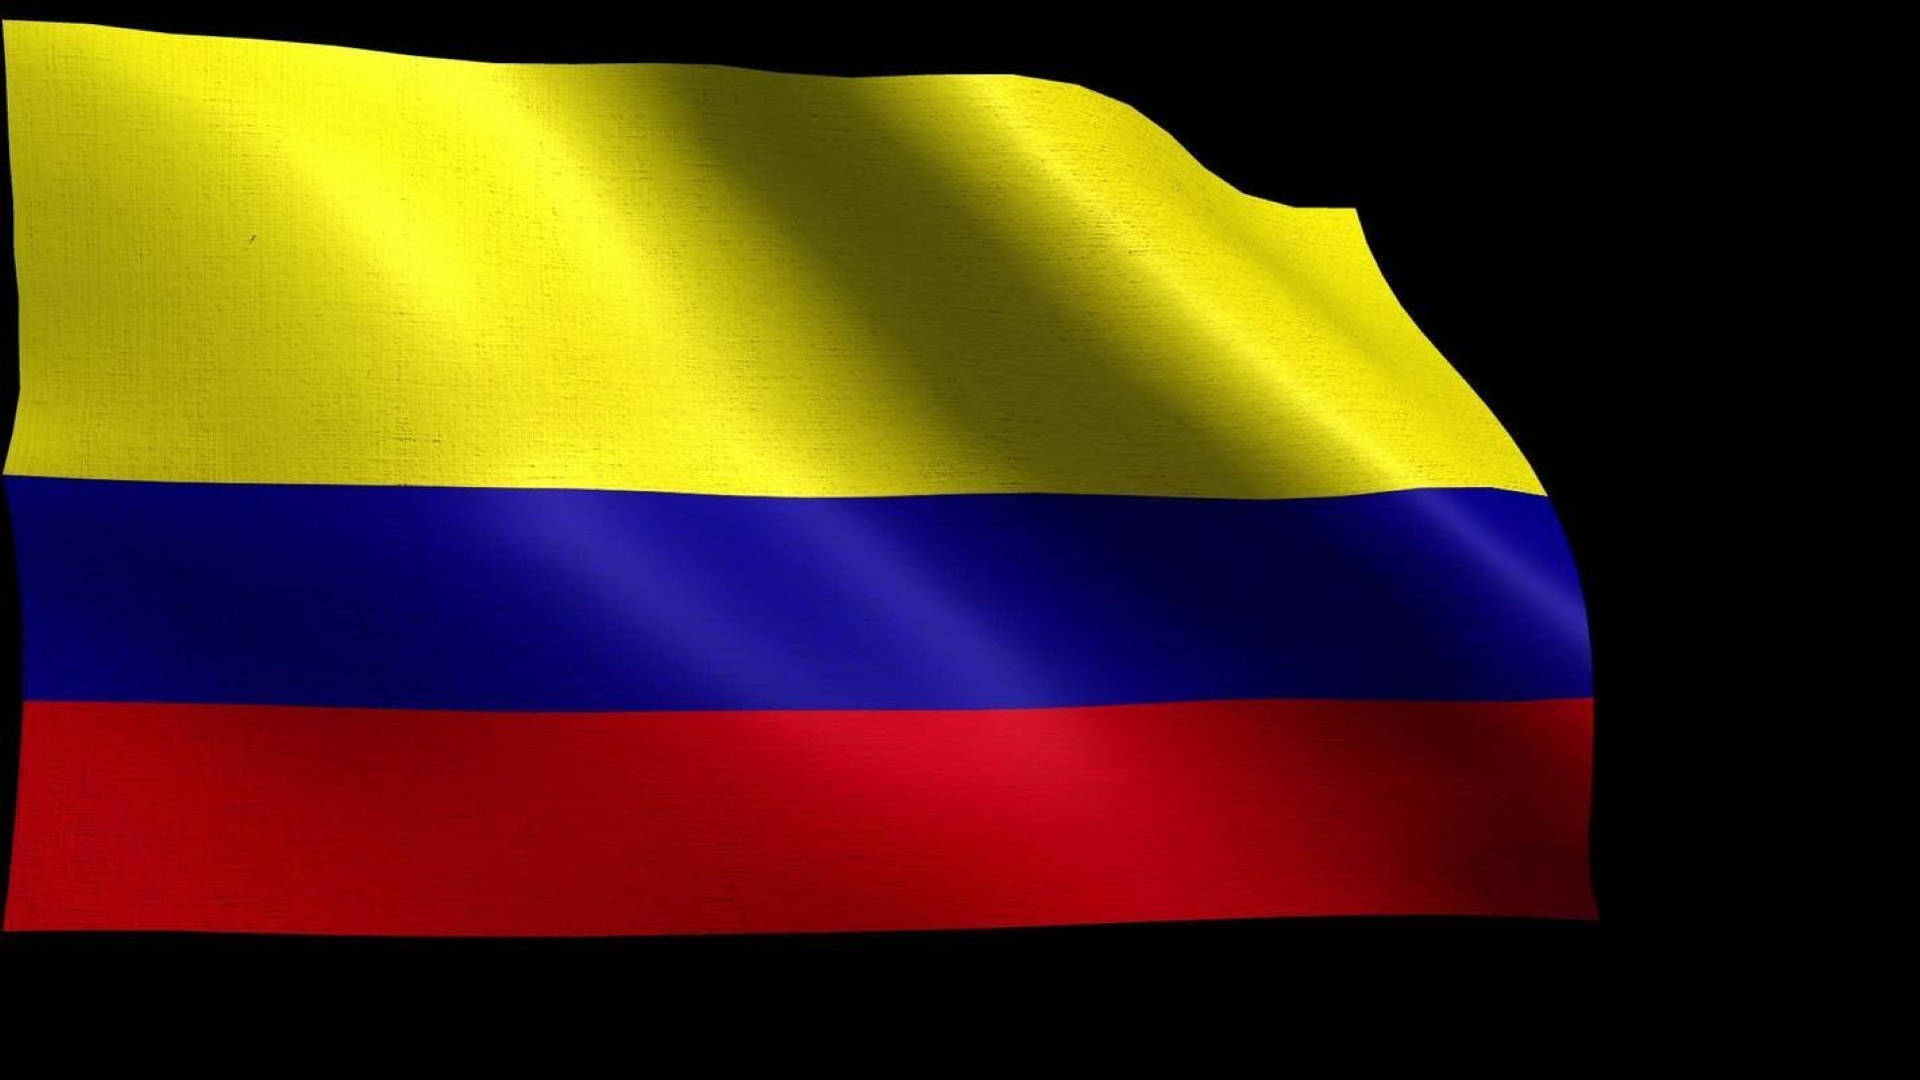 Banderade Colombia En Negro Fondo de pantalla